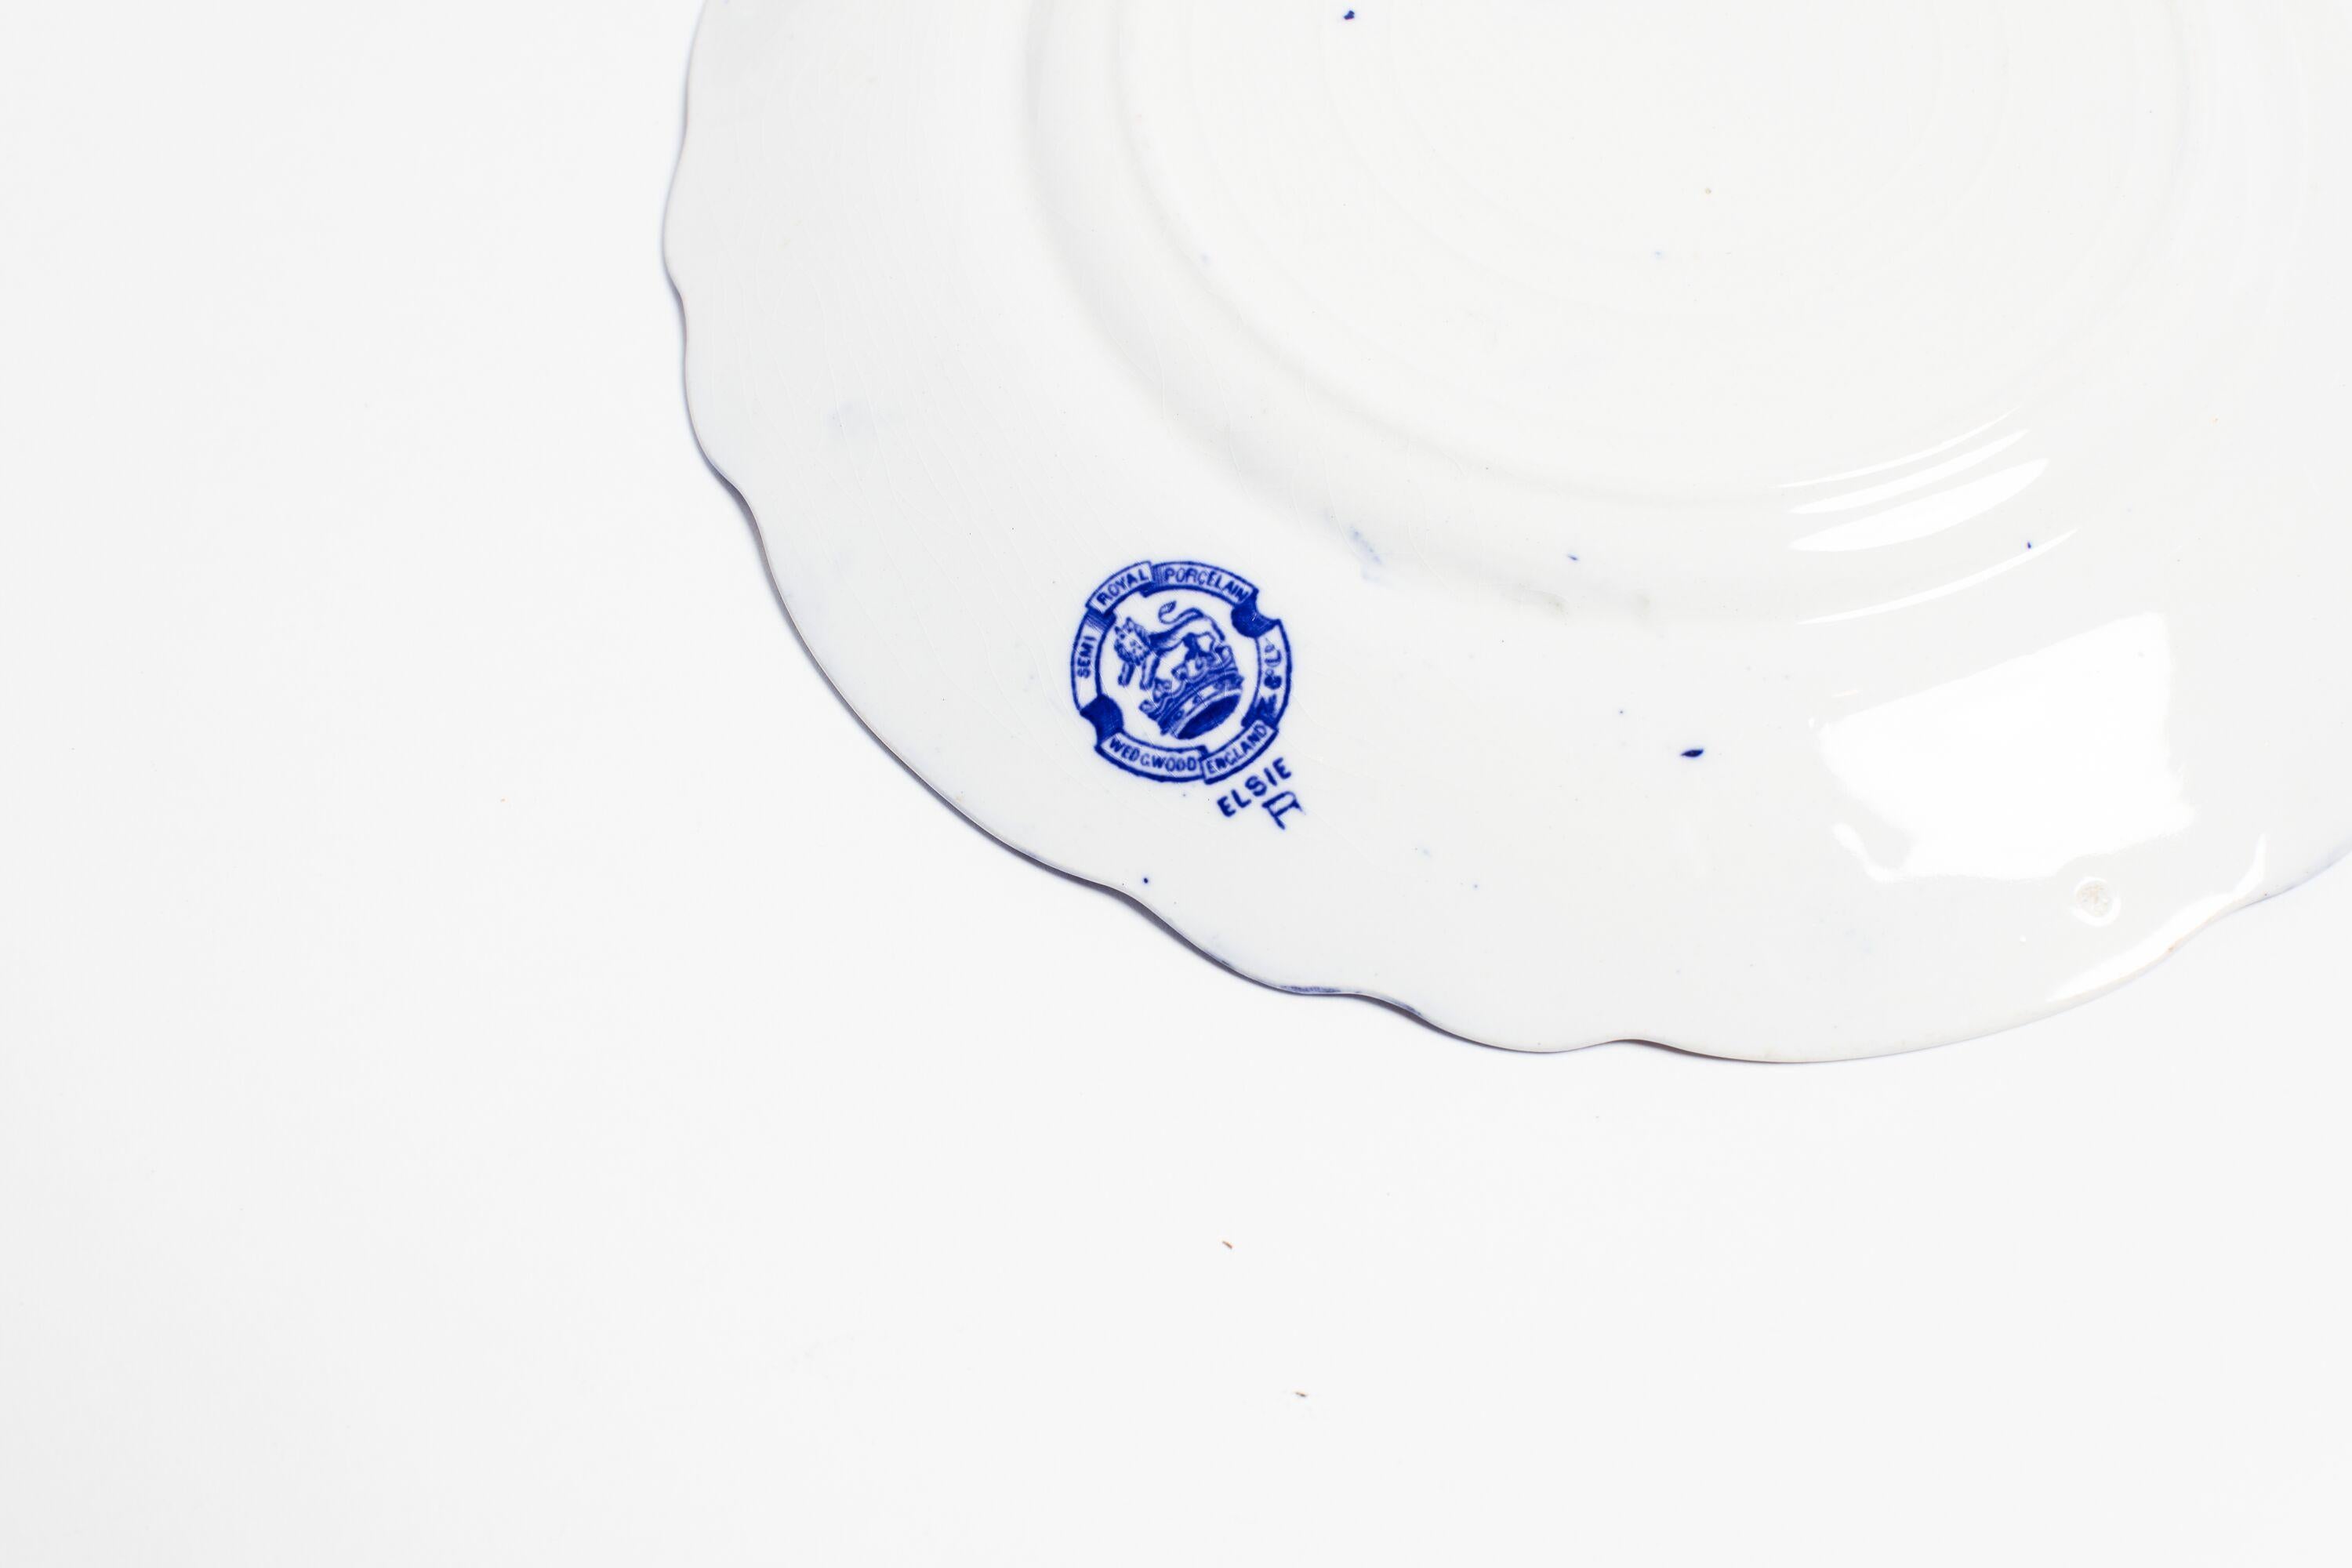 Service de vaisselle ancien Wedgwood en bleu de flux. Nommé d'après le doux fondu bleu de la couleur, vers 1860. Petites pertes et ébréchures sur certaines pièces.

L'ensemble comprend : 10 assiettes plates, 11 assiettes à salade, 6 assiettes à